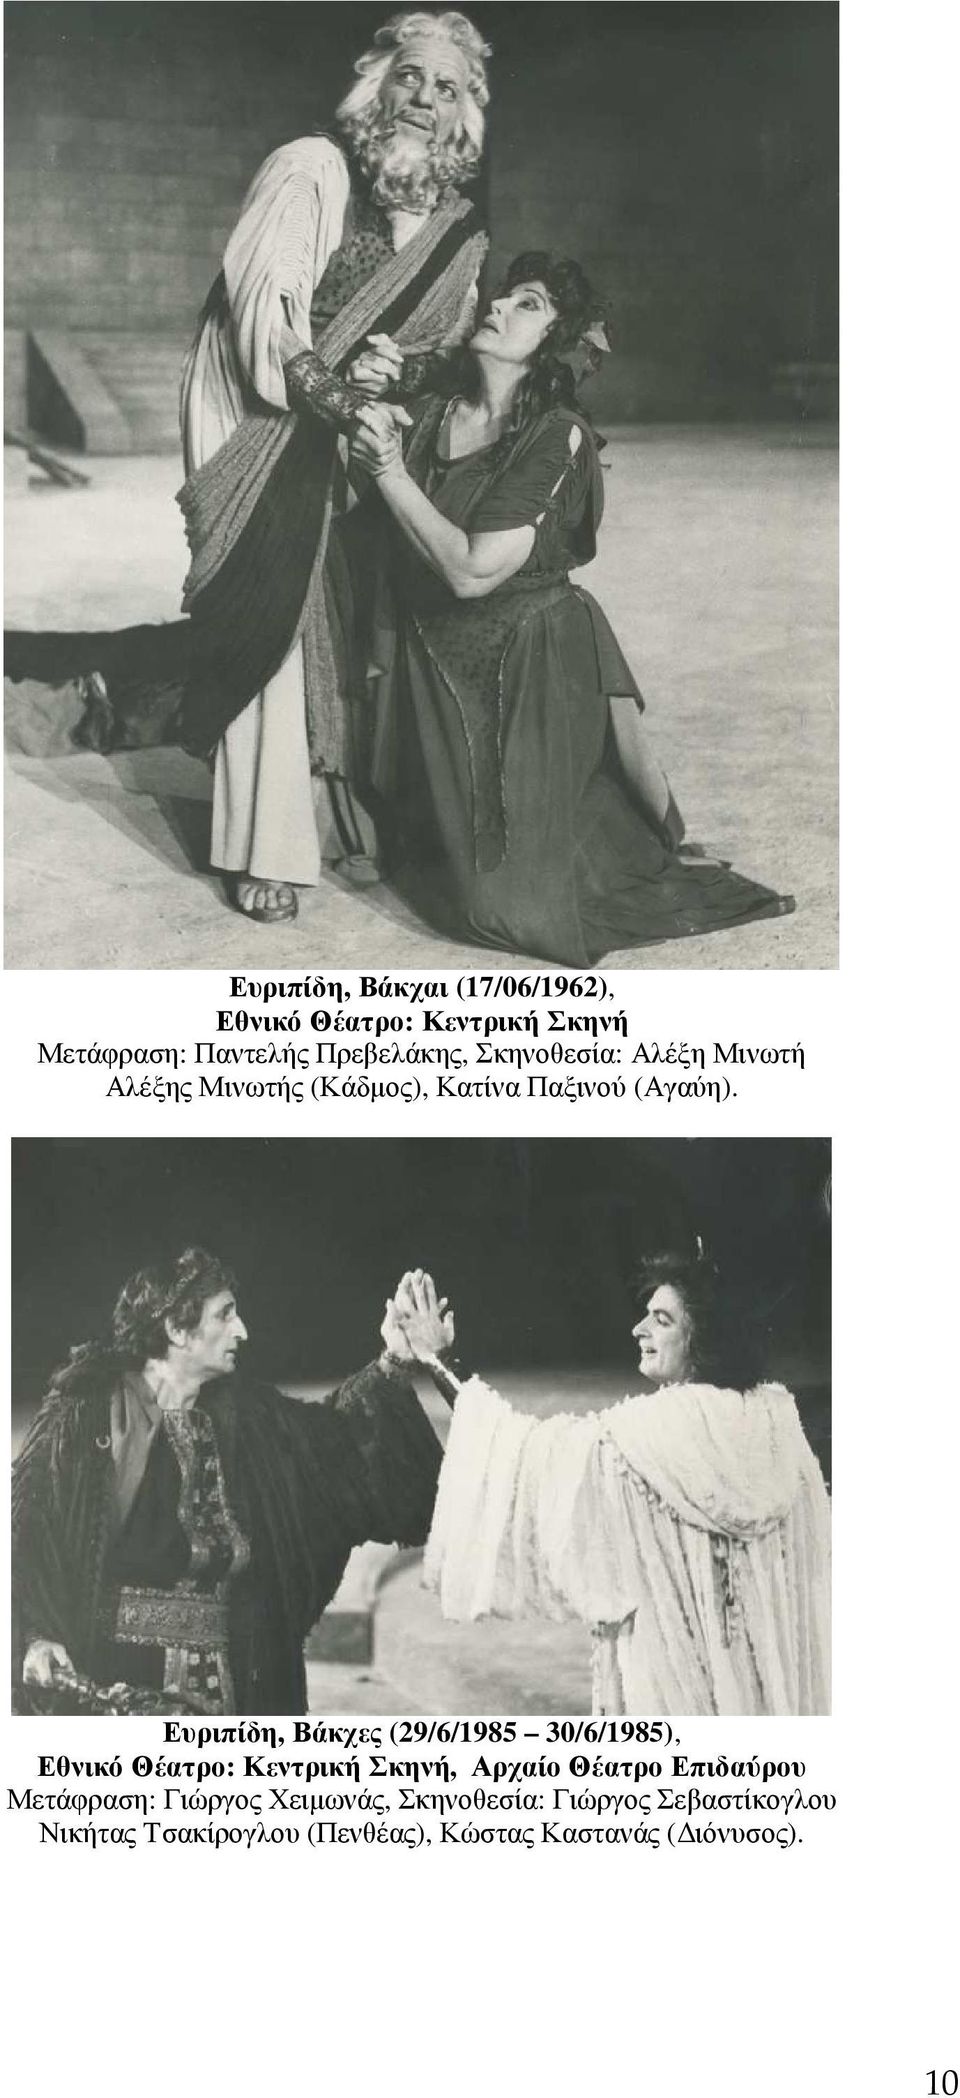 Ευριπίδη, Βάκχες (29/6/1985 30/6/1985), Εθνικό Θέατρο: Κεντρική Σκηνή, Αρχαίο Θέατρο Επιδαύρου